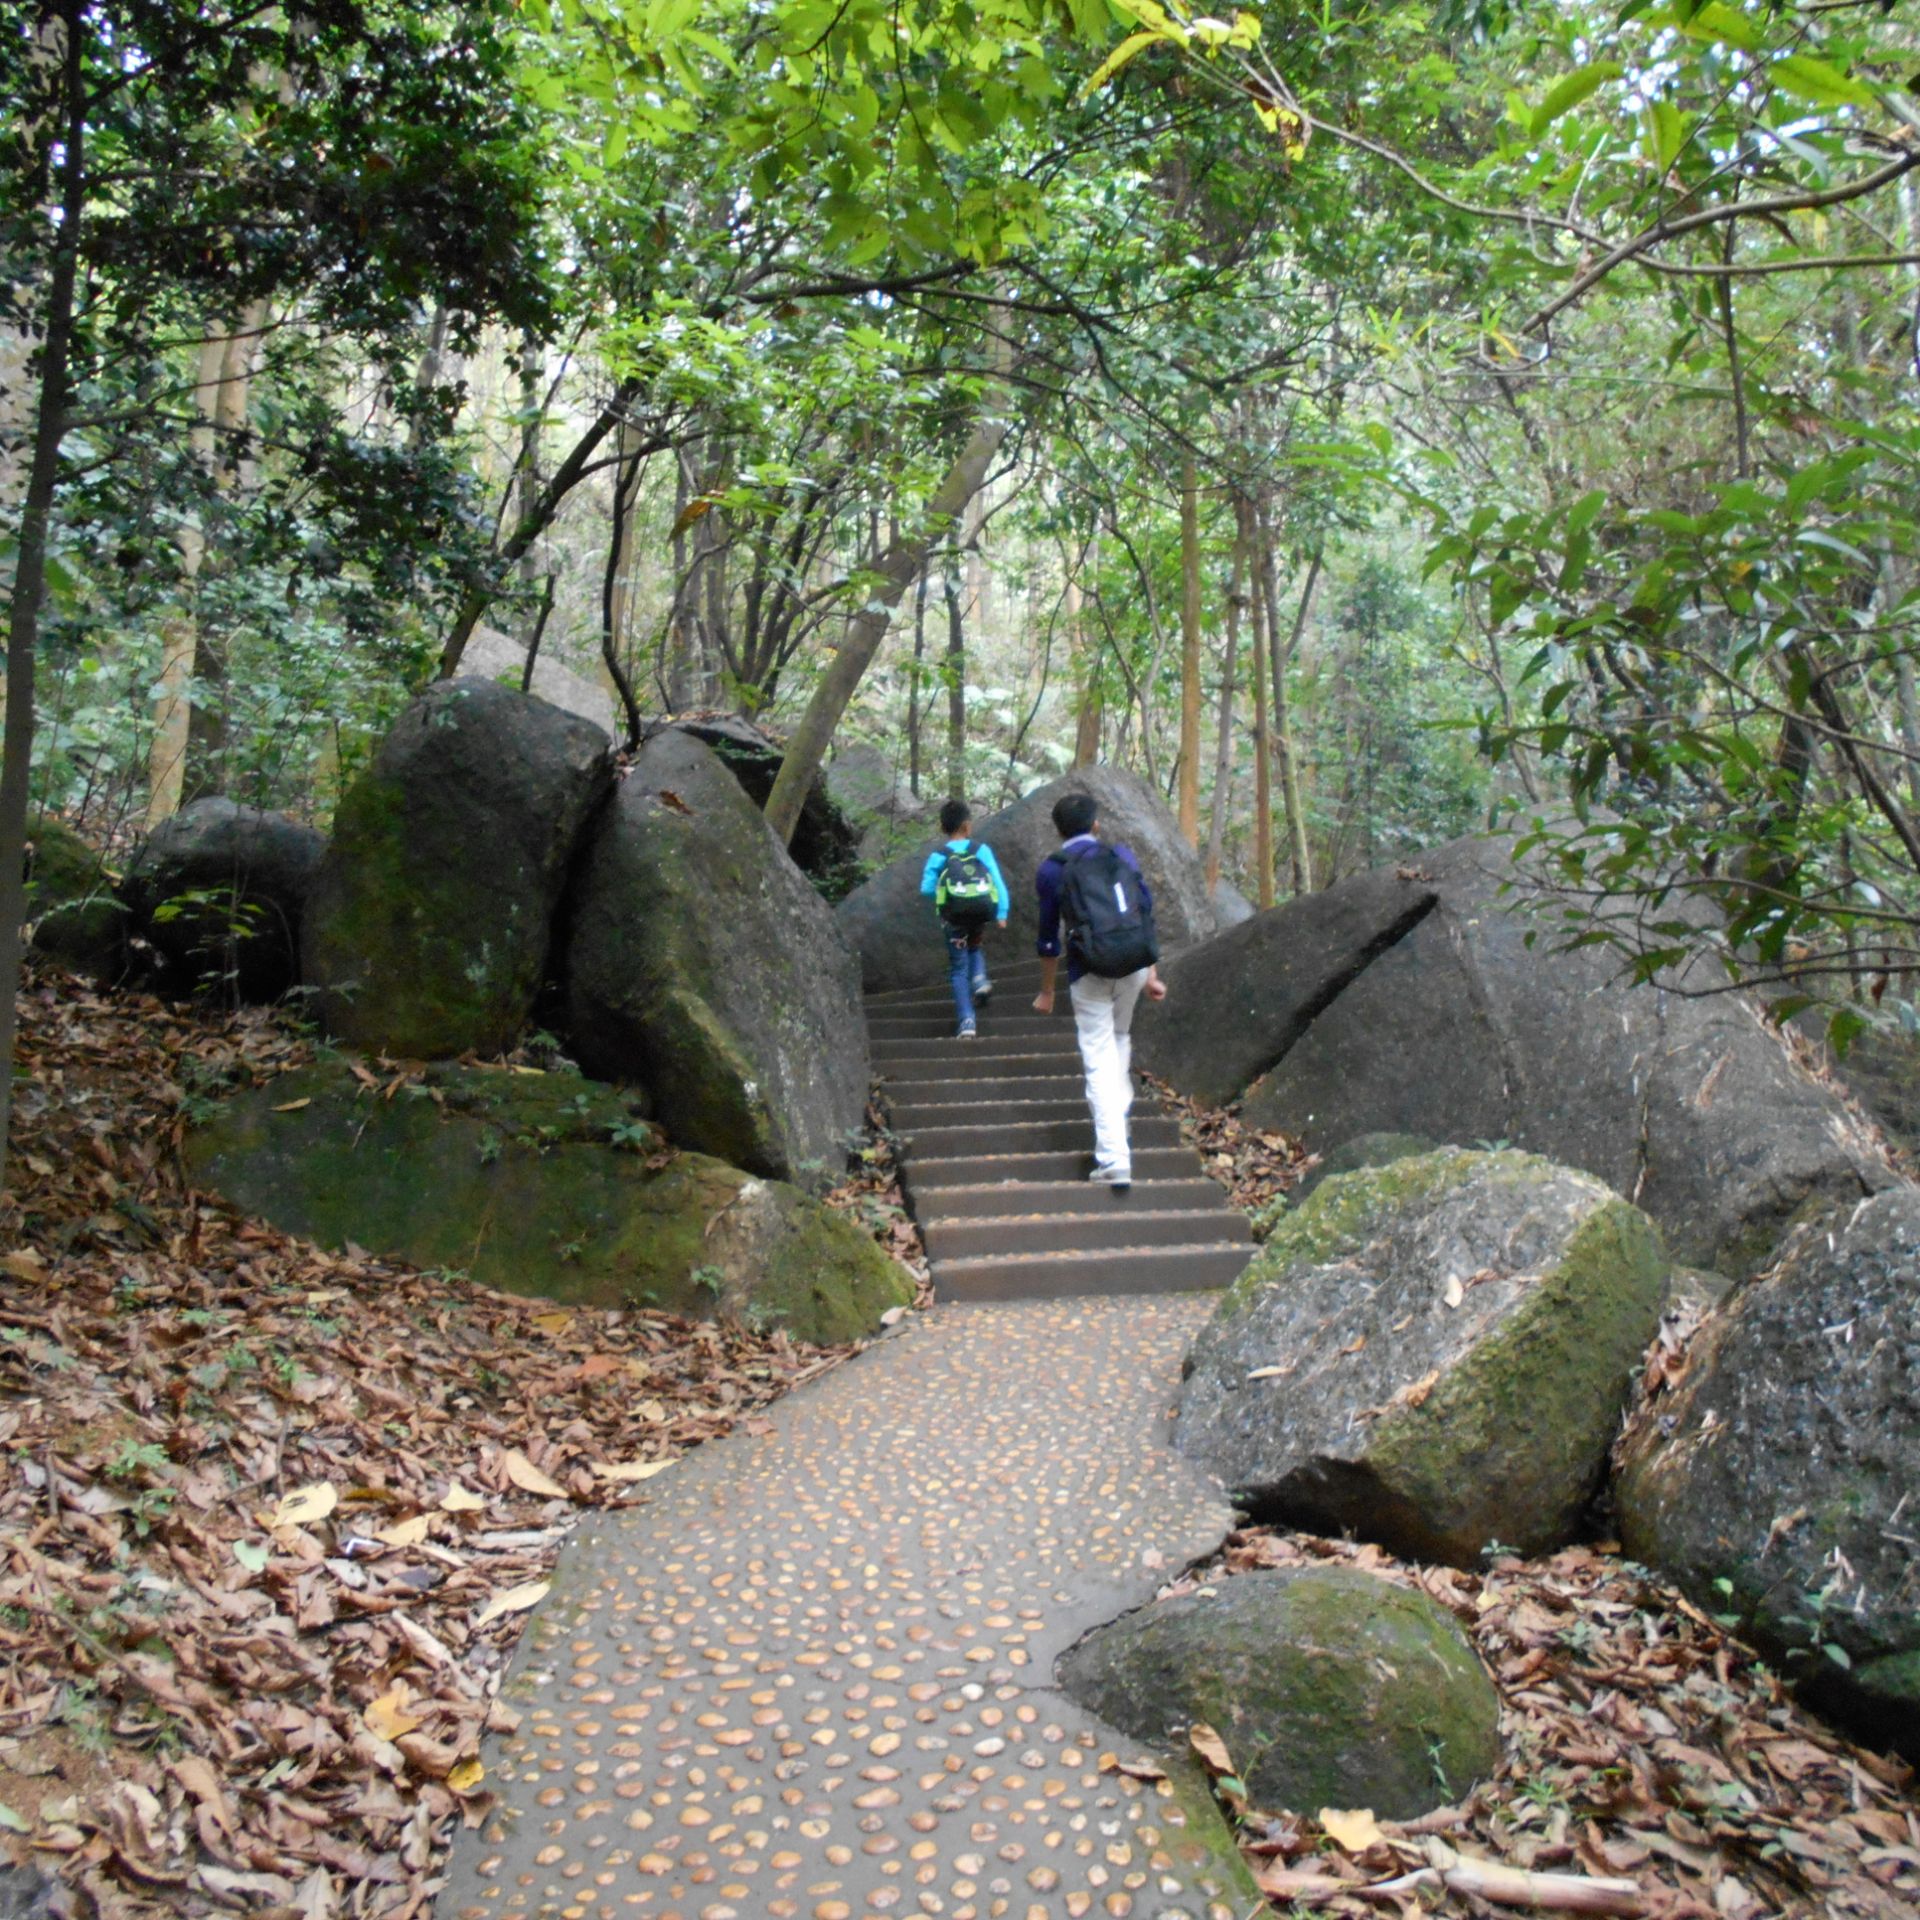 位于黄埔区南岗镇庙头村,当地人叫"飞龙山",官方名称为龙头山森林公园